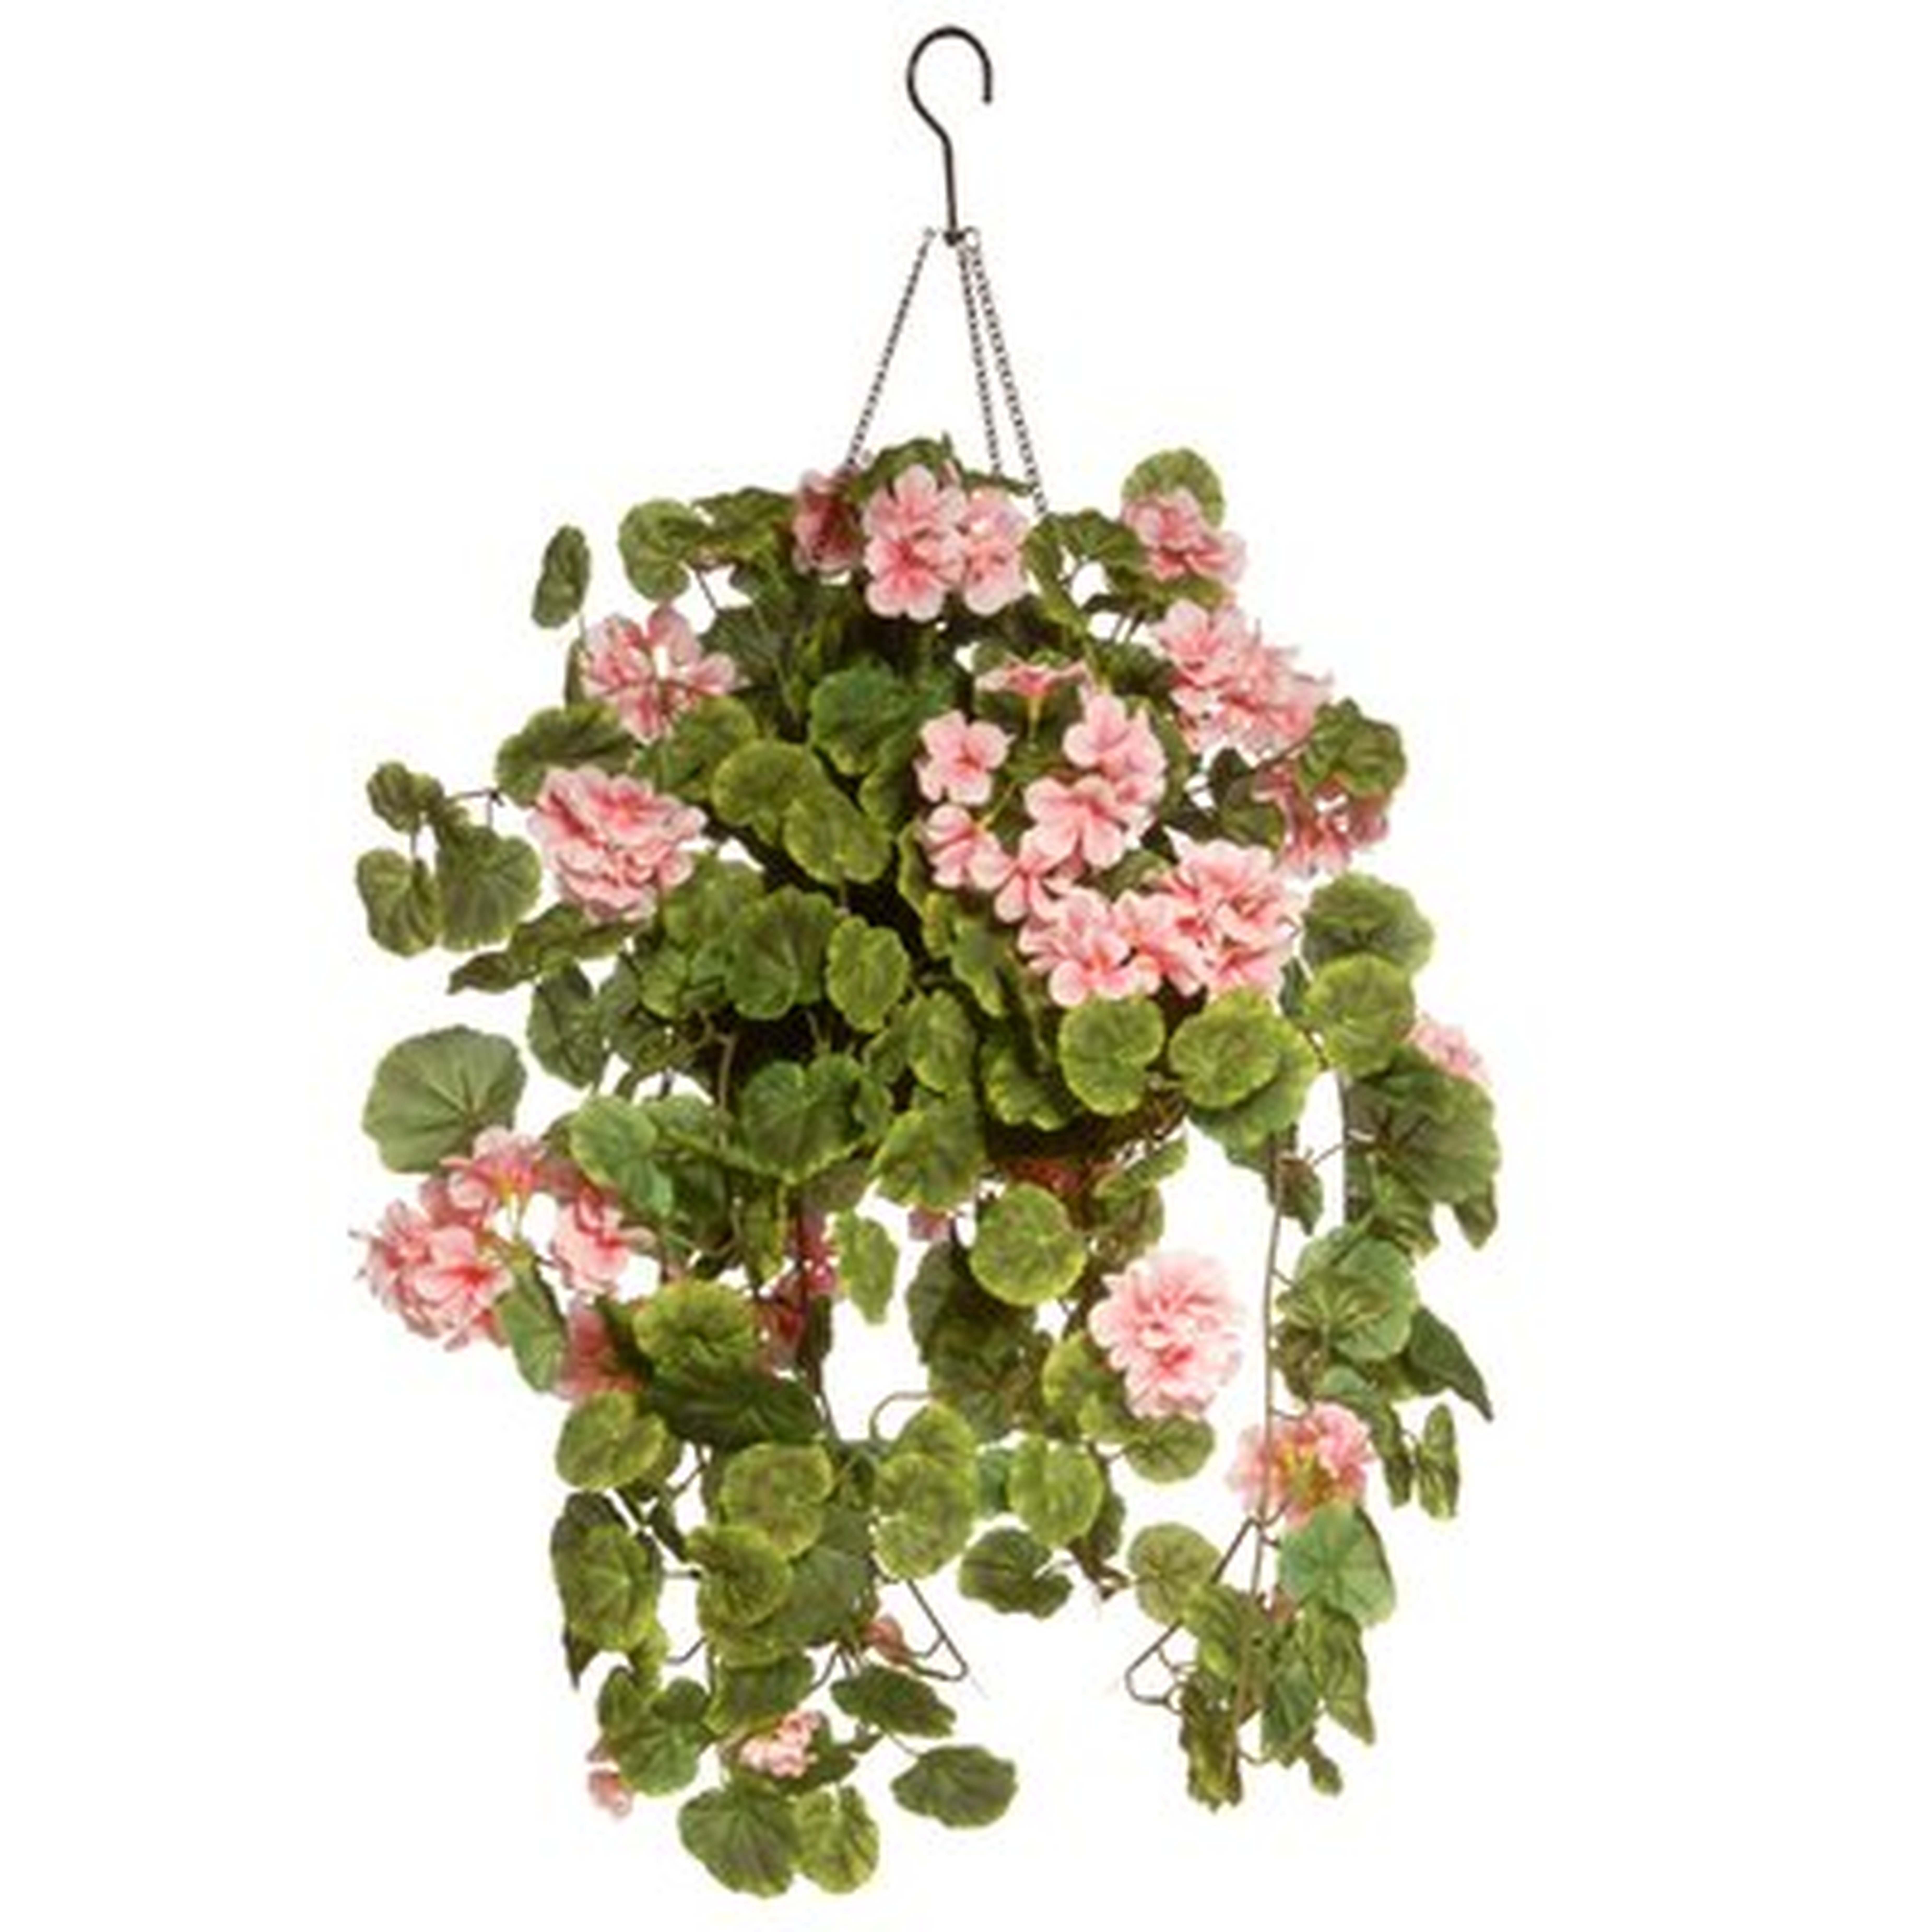 Hanging Flowering Plant in Basket - Wayfair